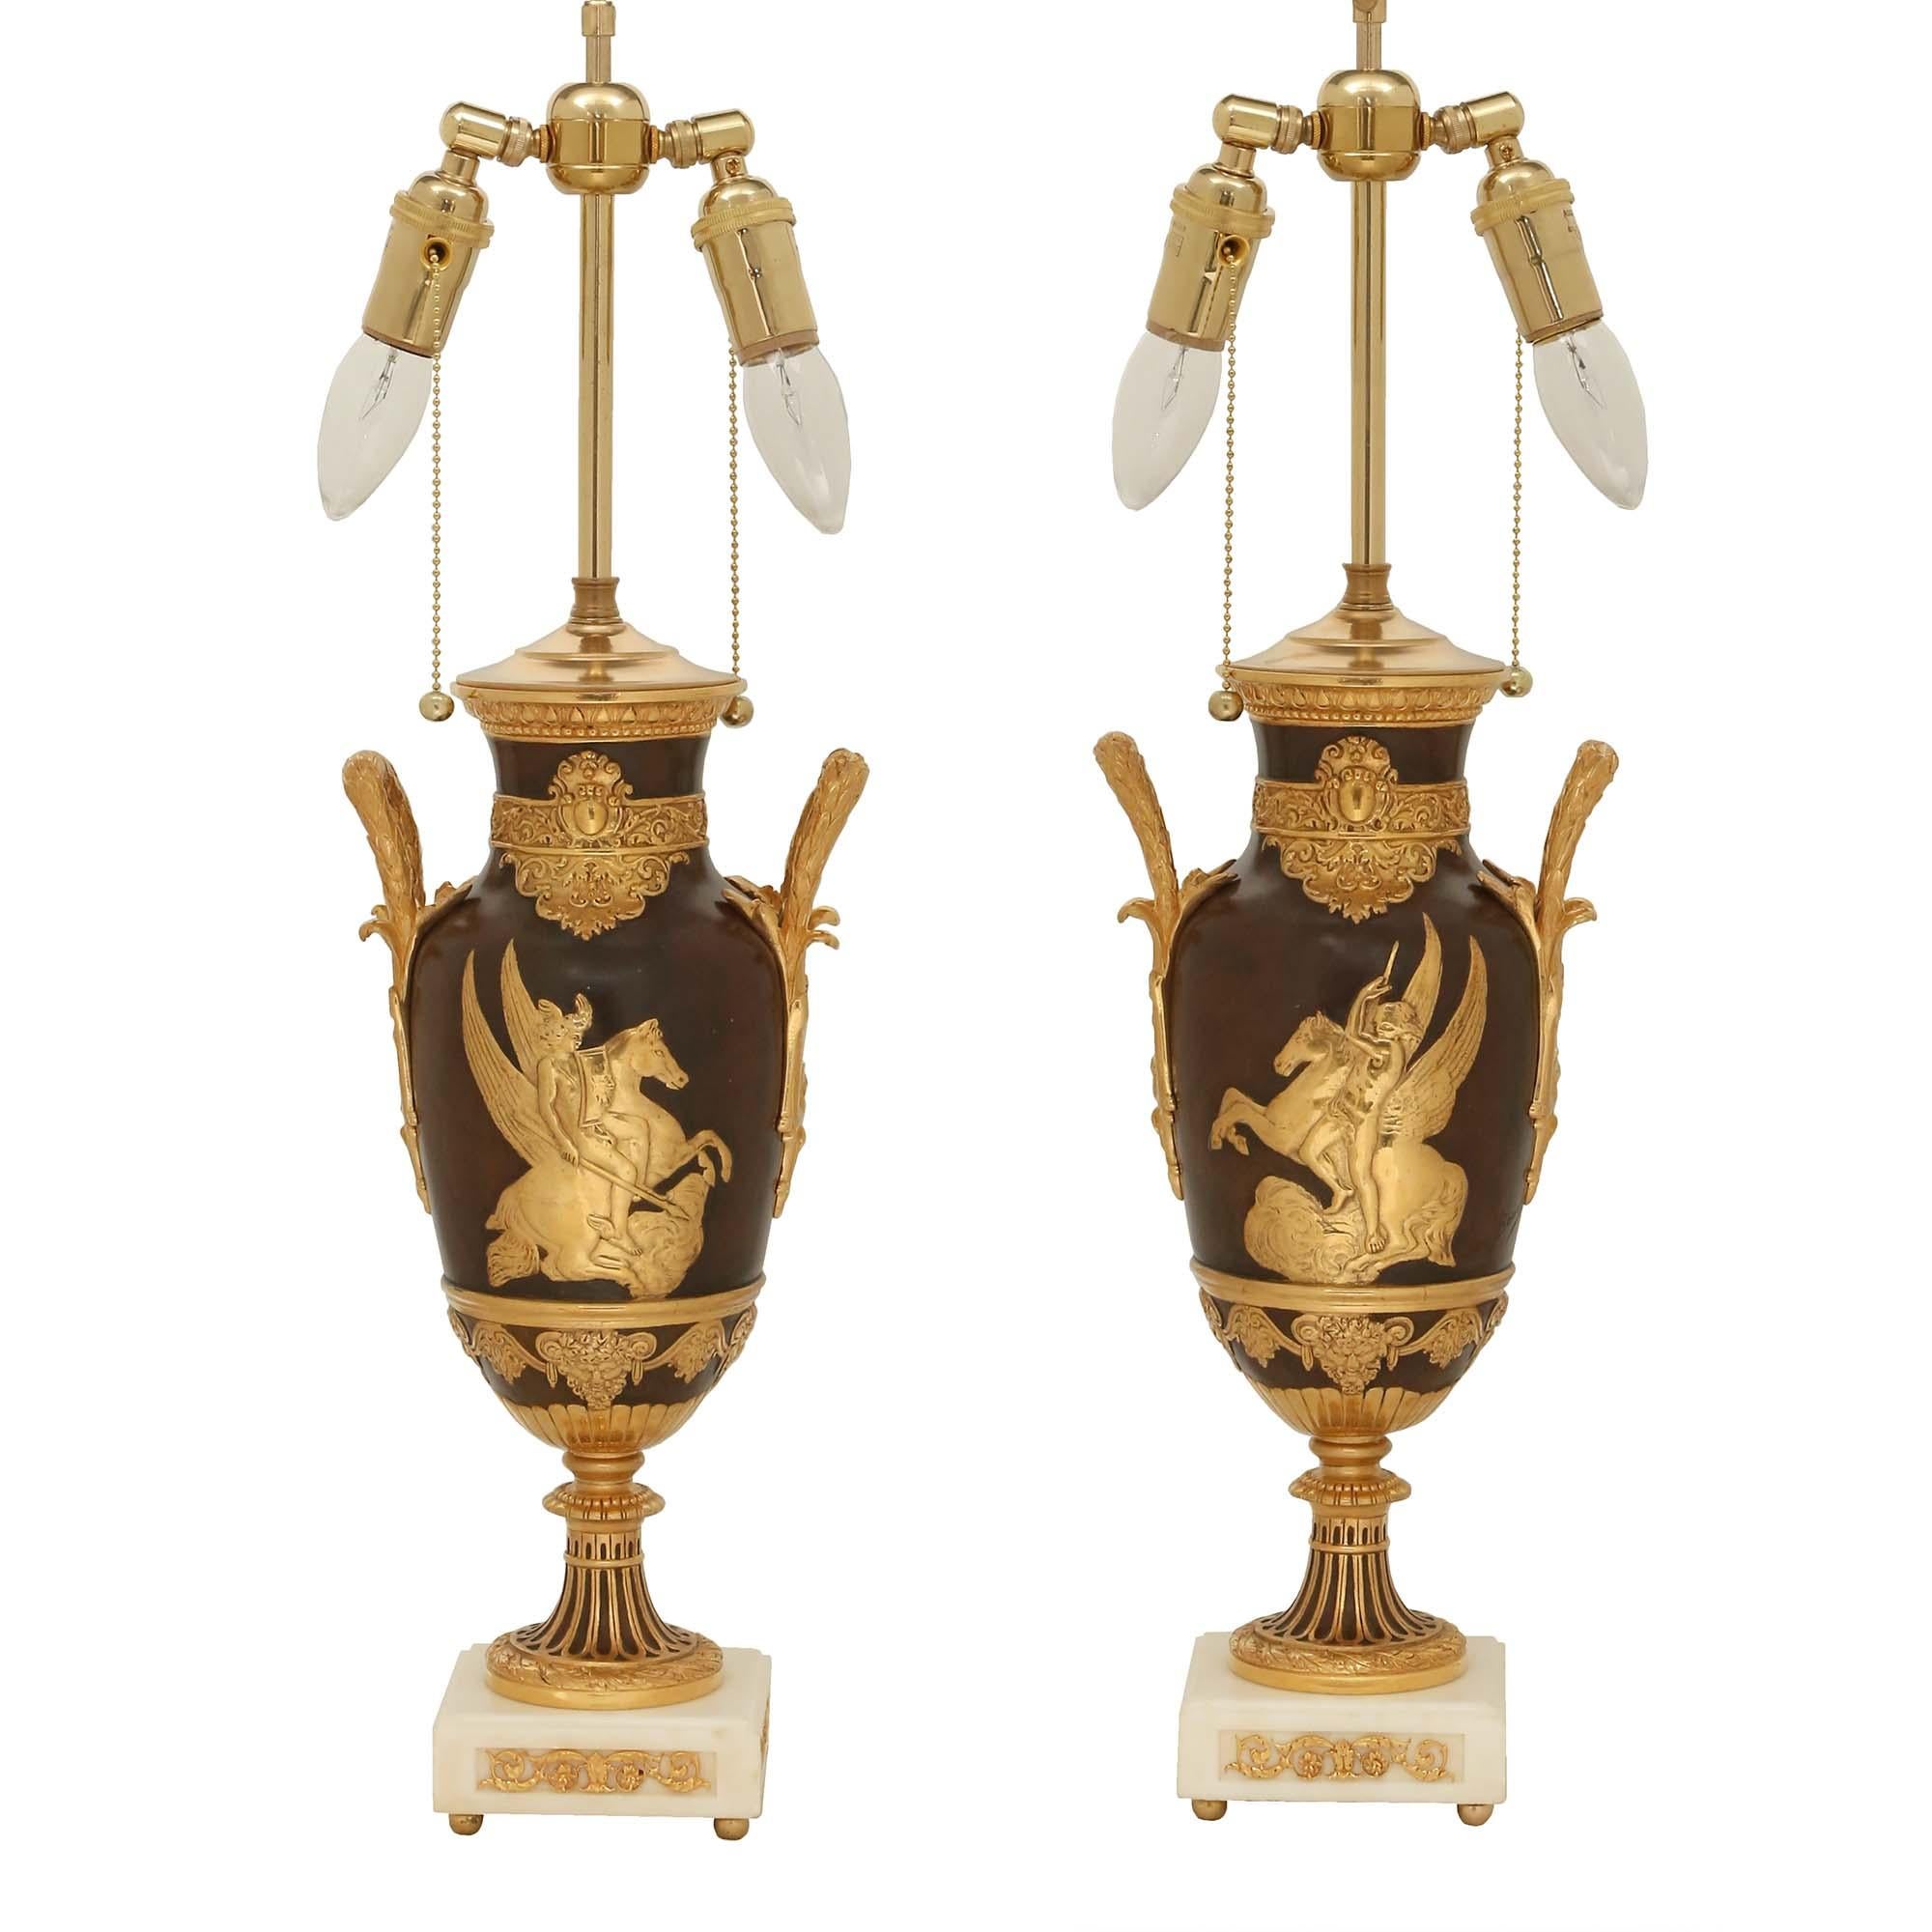 Une superbe paire d'urnes néo-classiques françaises du 19ème siècle en bronze patiné, bronze doré et marbre montées en lampes, signées LÉON BOUCHER. Chaque lampe est surélevée par une base carrée en marbre blanc de Carrare avec des pieds en boule en